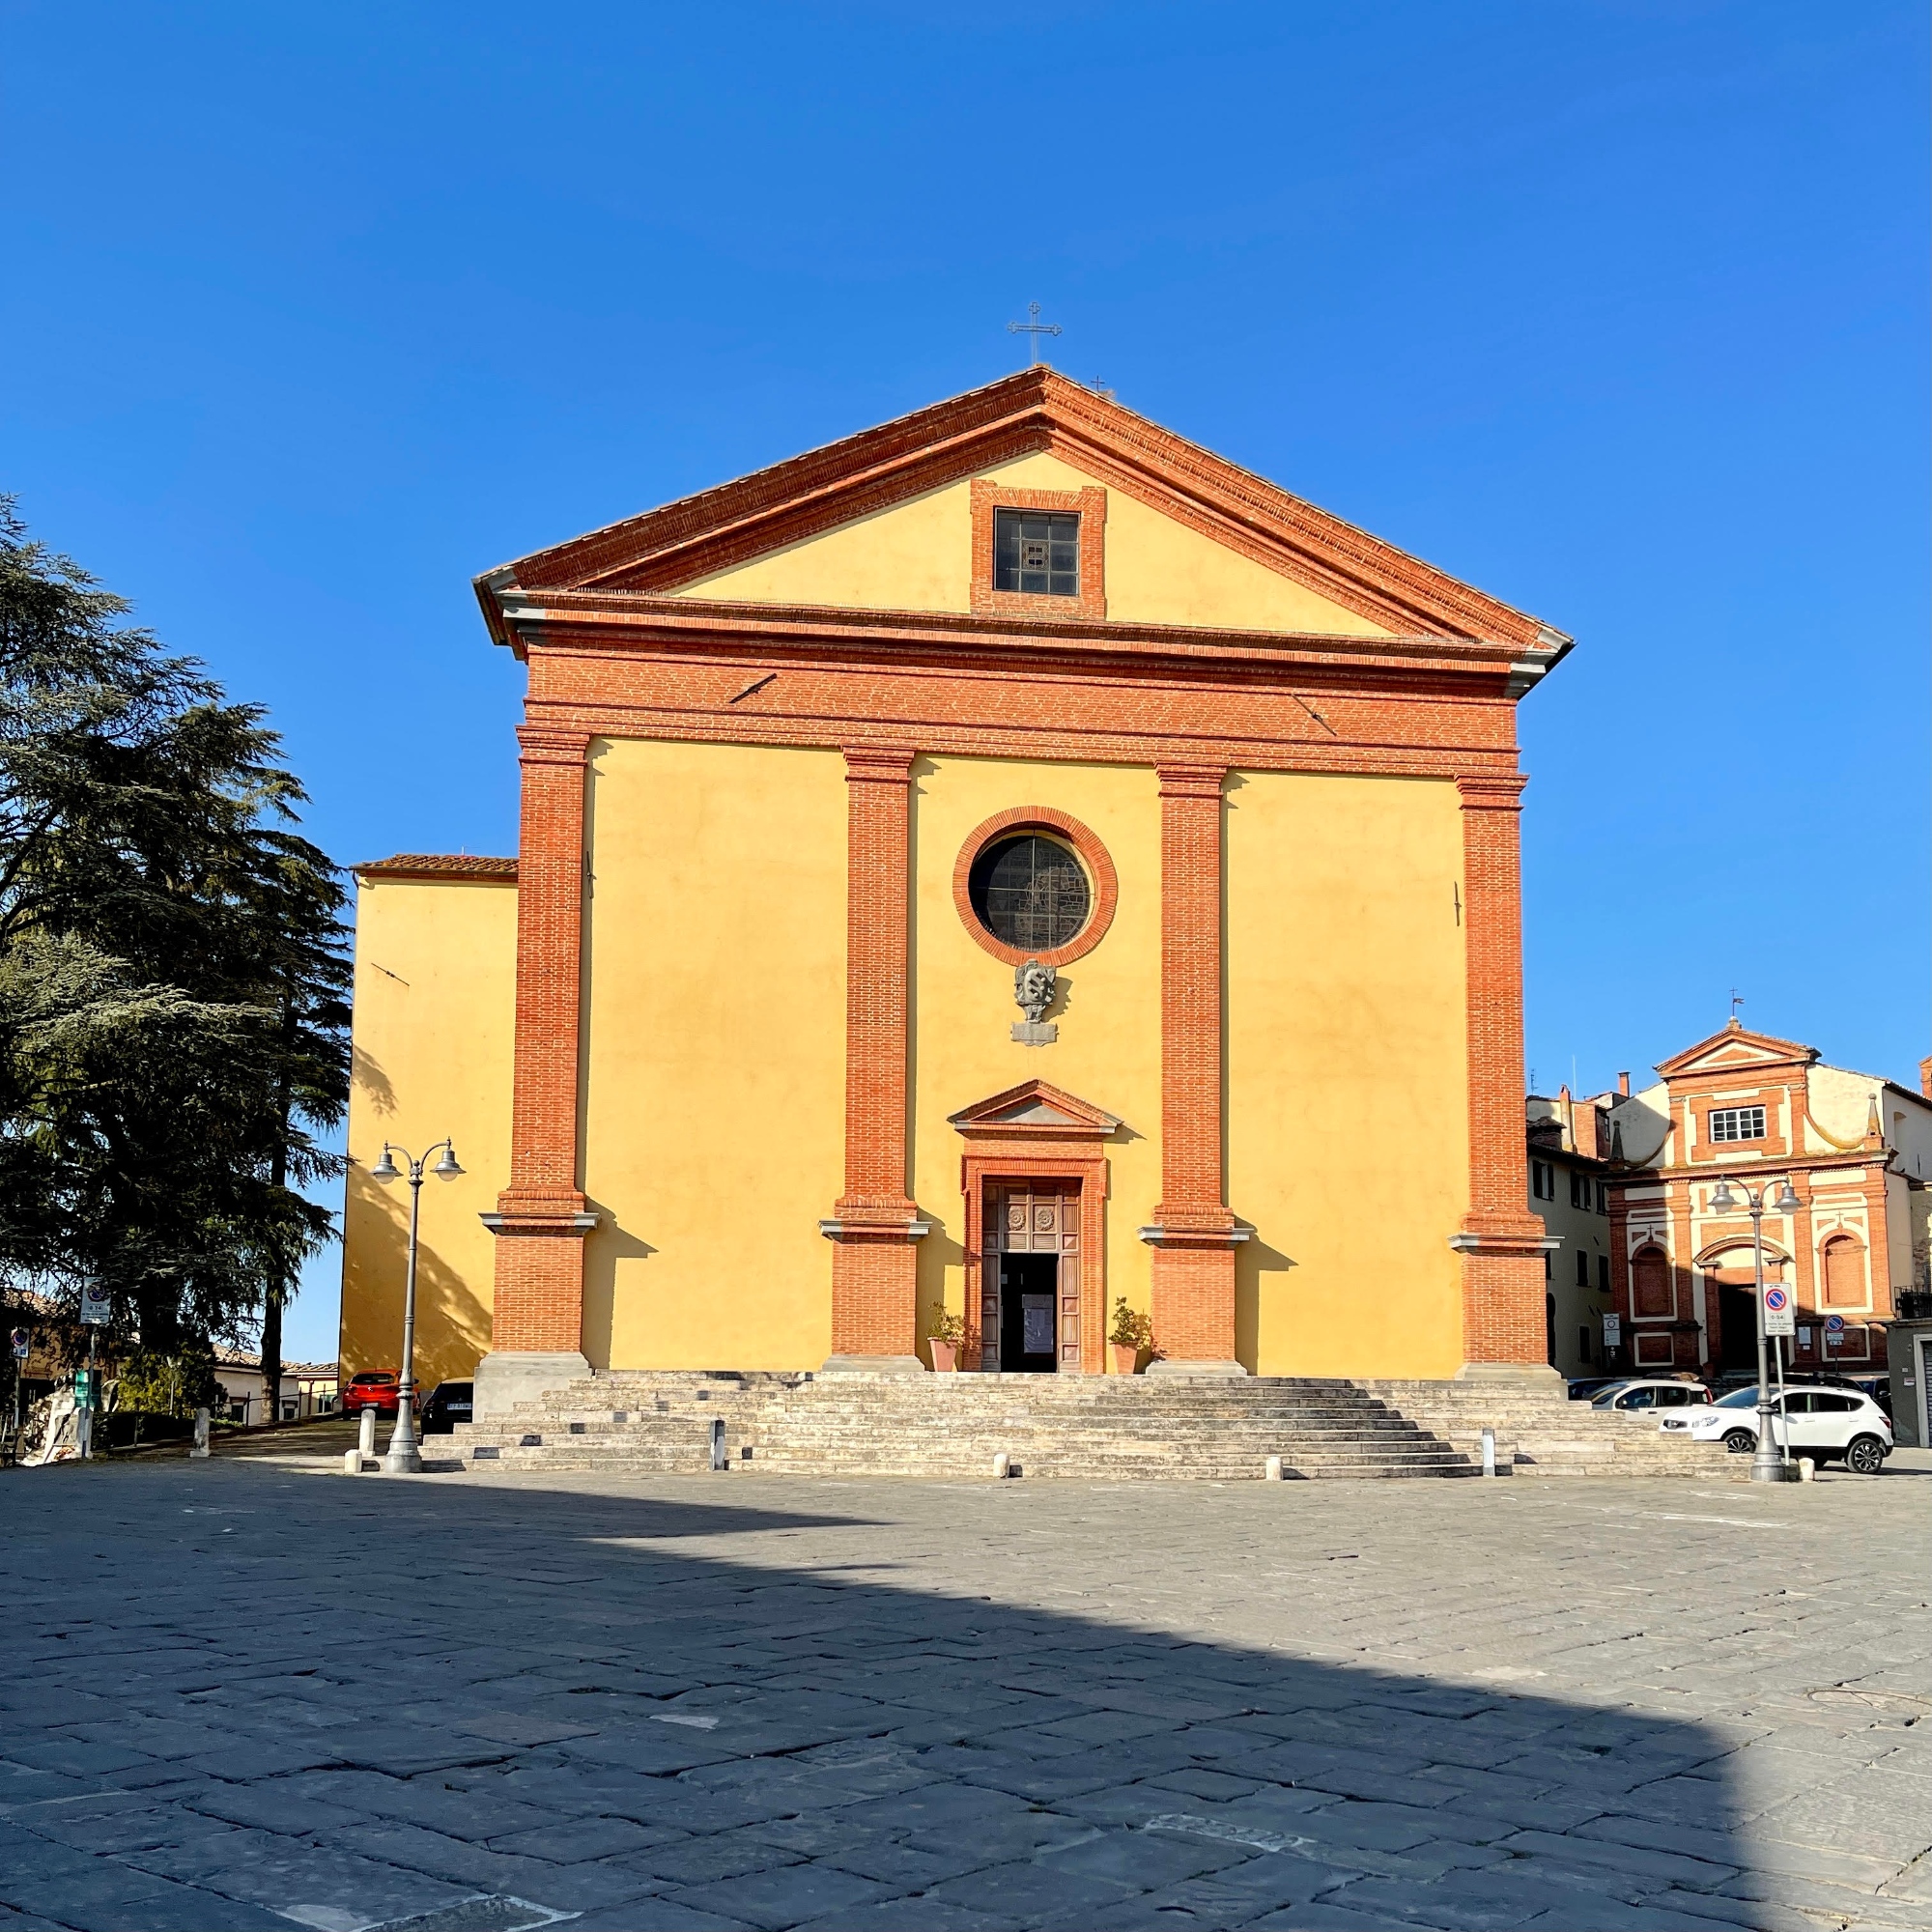 Collegiate Church of San Martino